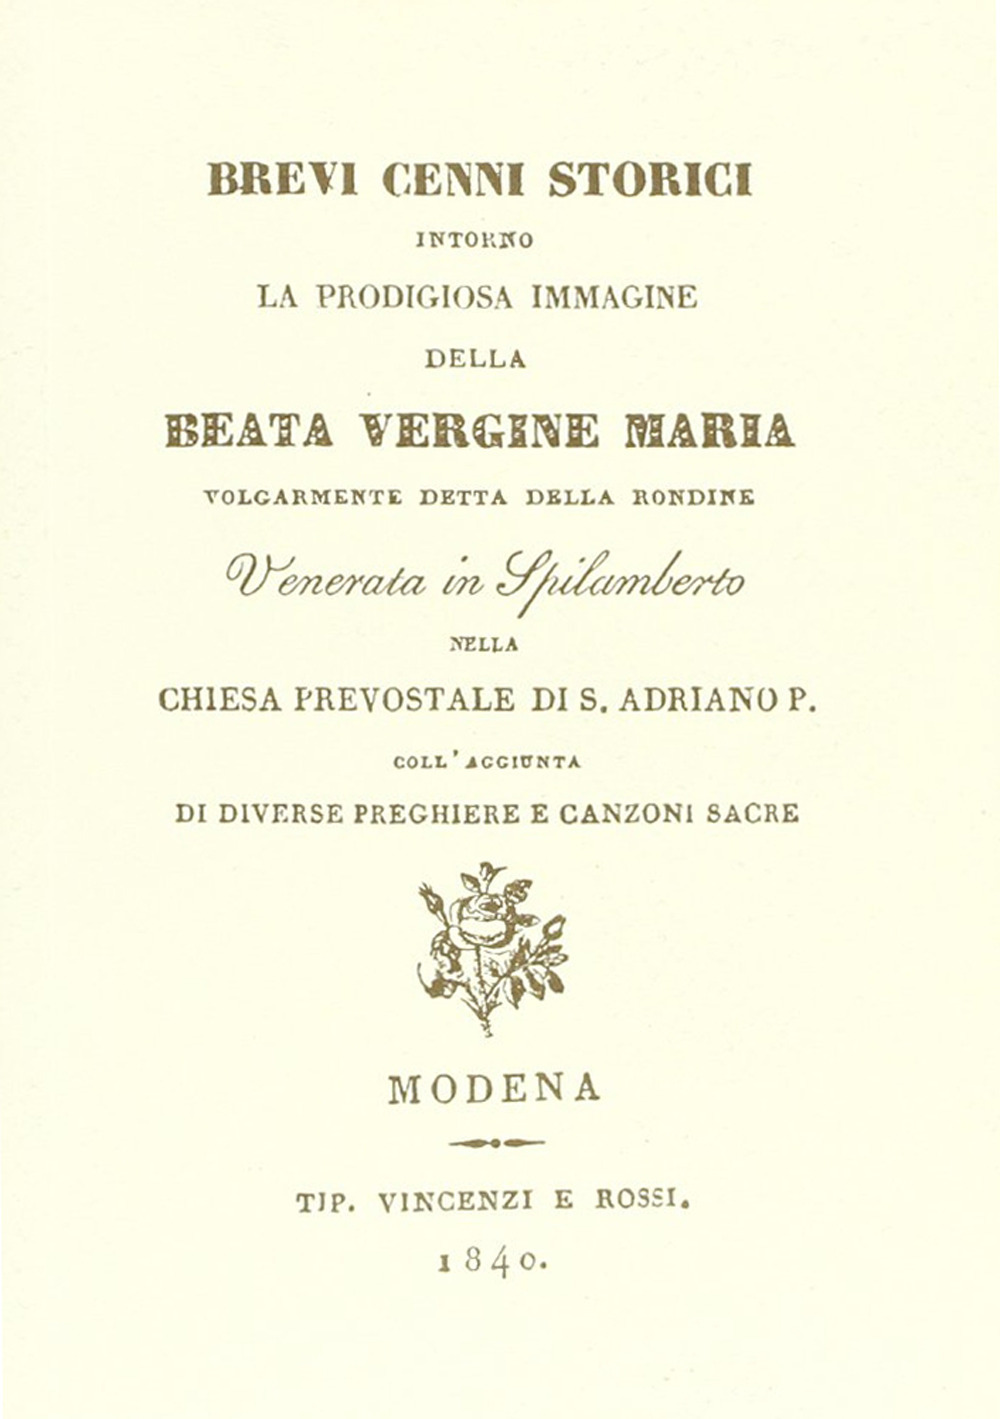 Cenni storici su Beata Vergine Maria volgarmente detta della Rondine Venerata in Spilamberto nella Chiesa prevostale di S. Adriano P. (rist. anast. 1840)